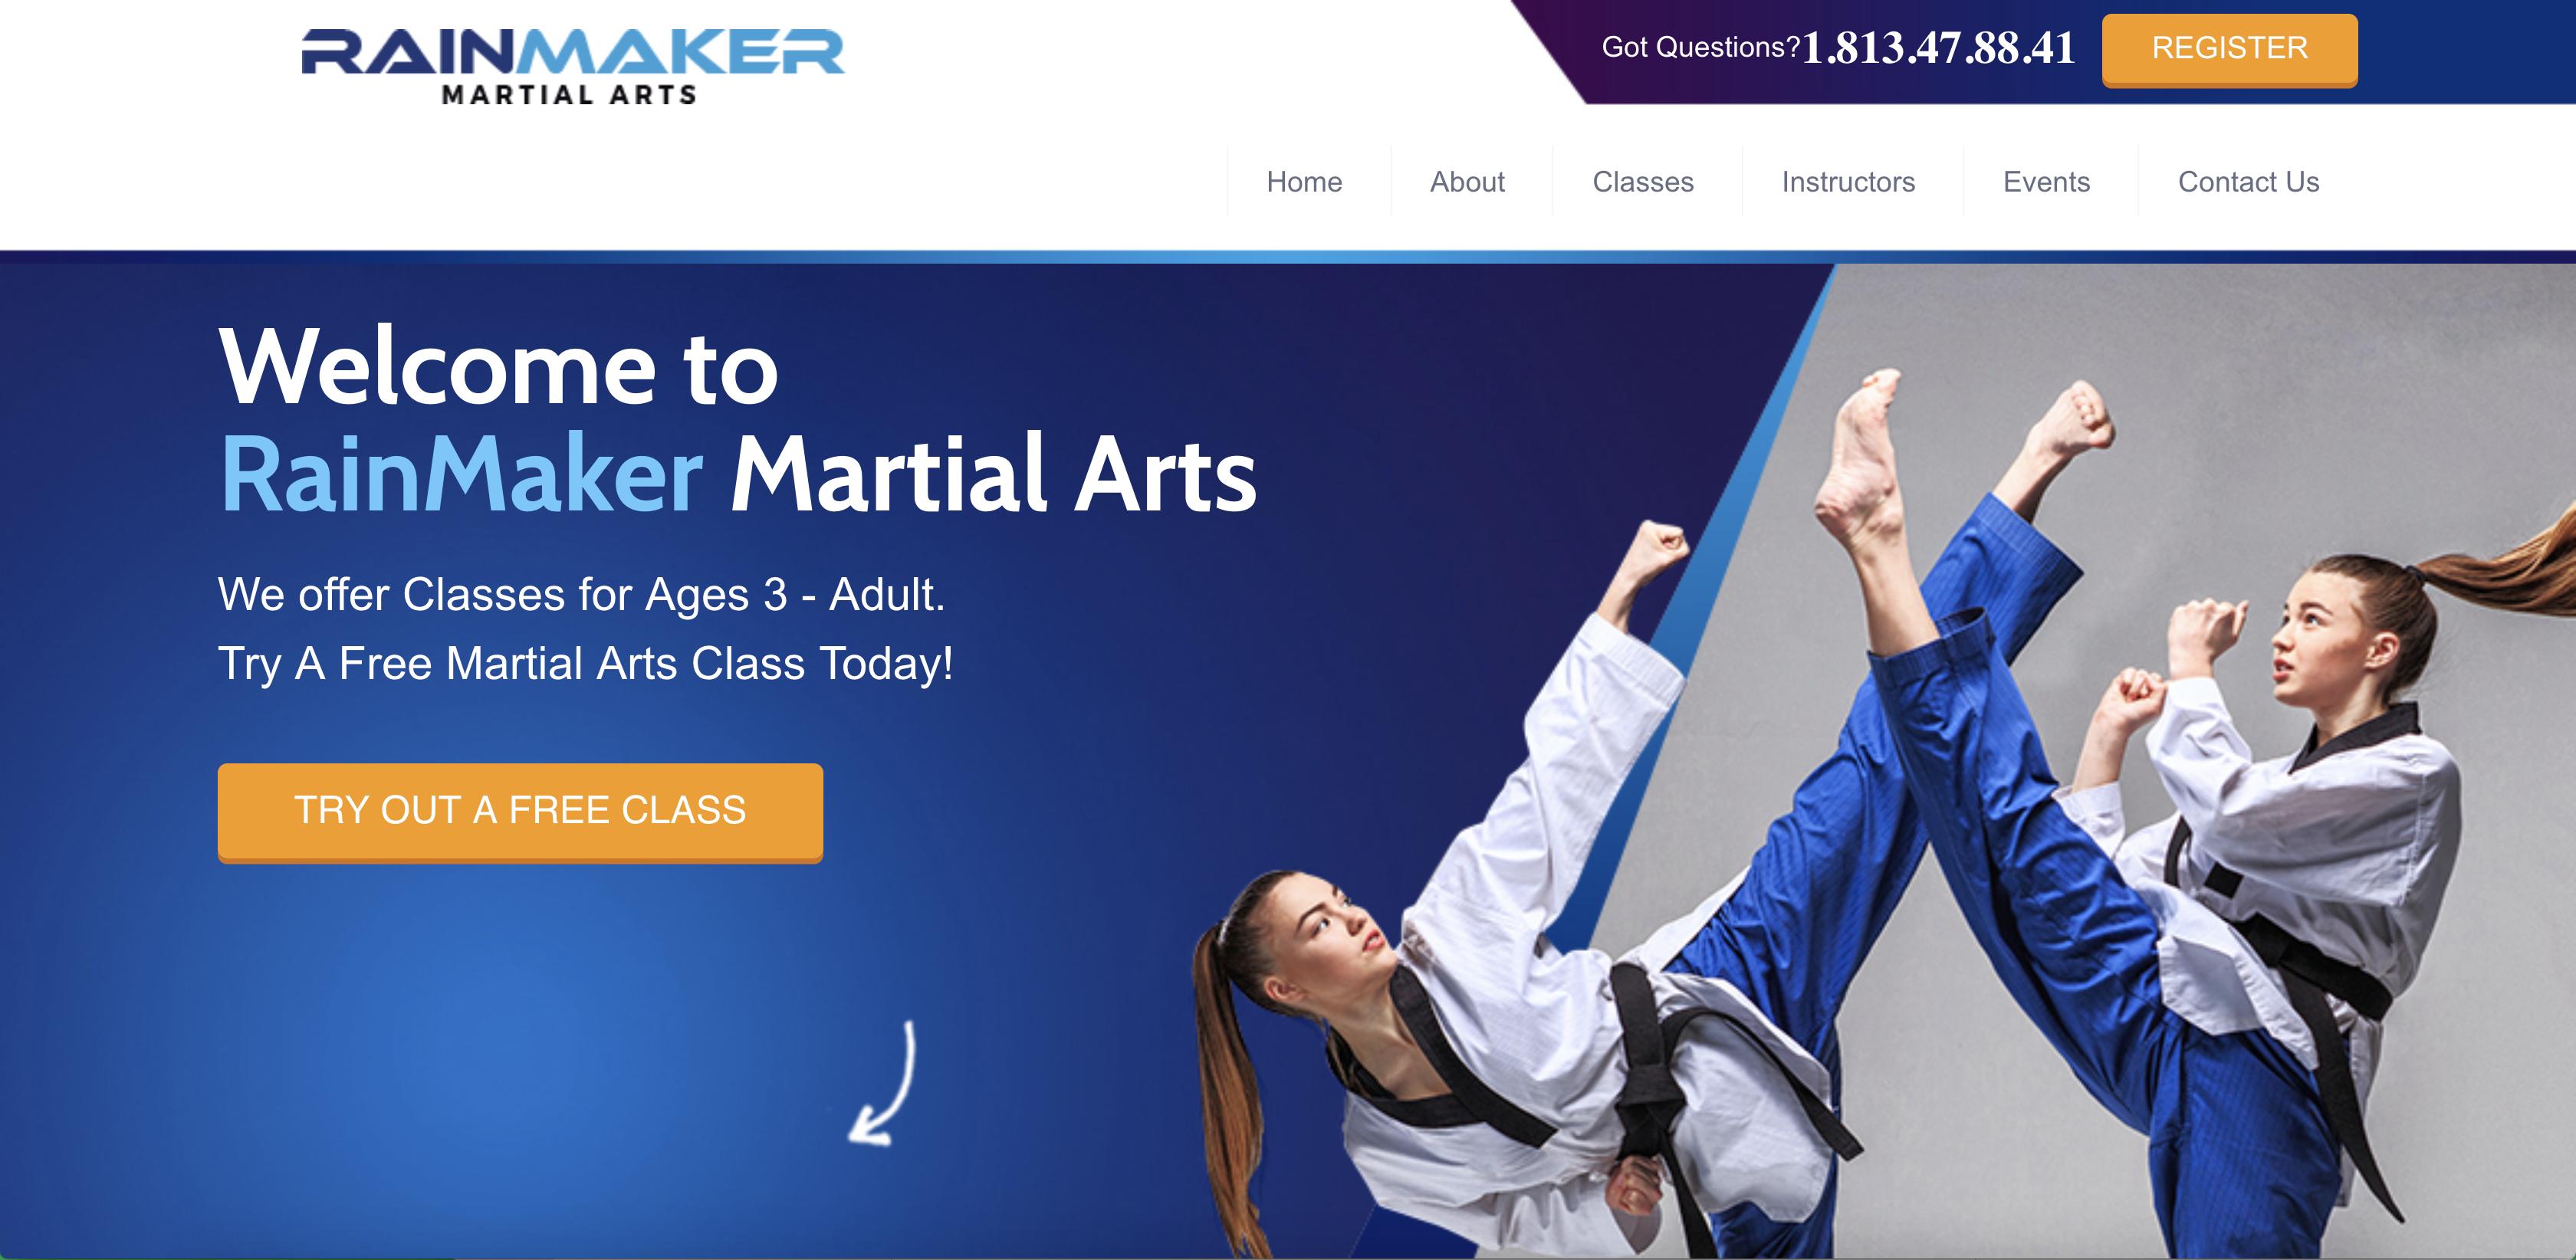 Martial Arts School Landing Page Services